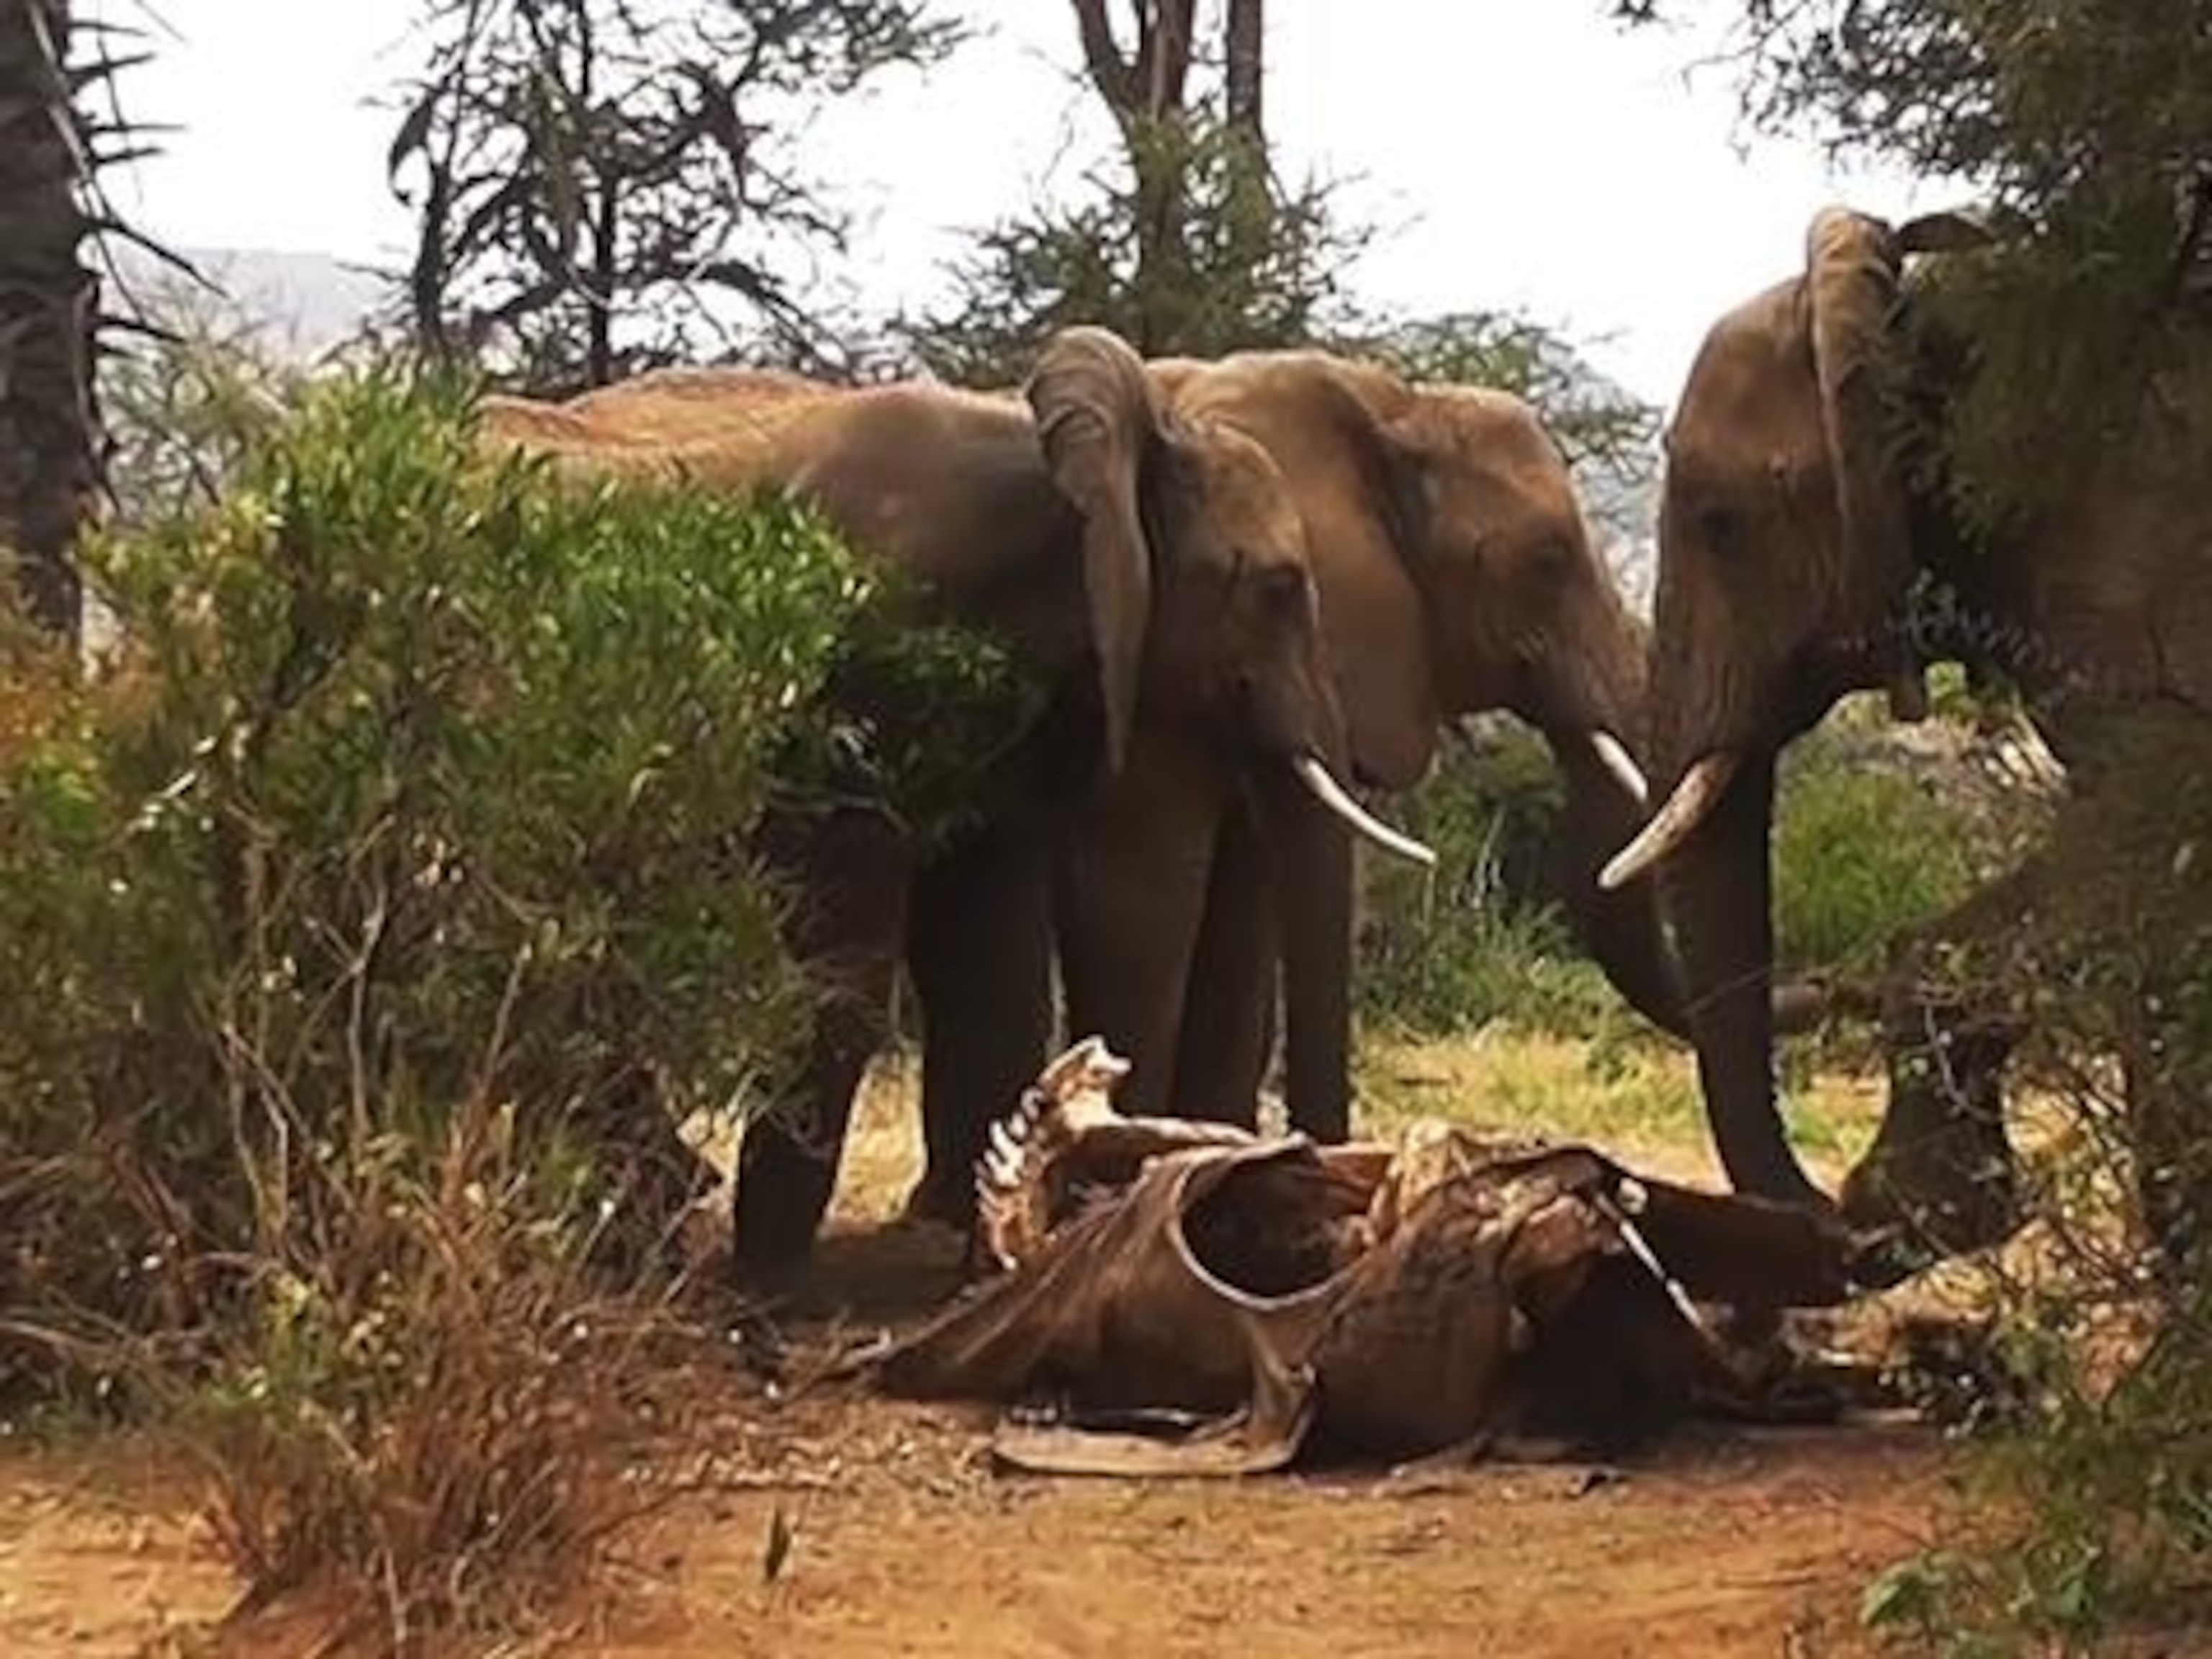 Do elephants really mourn their dead?